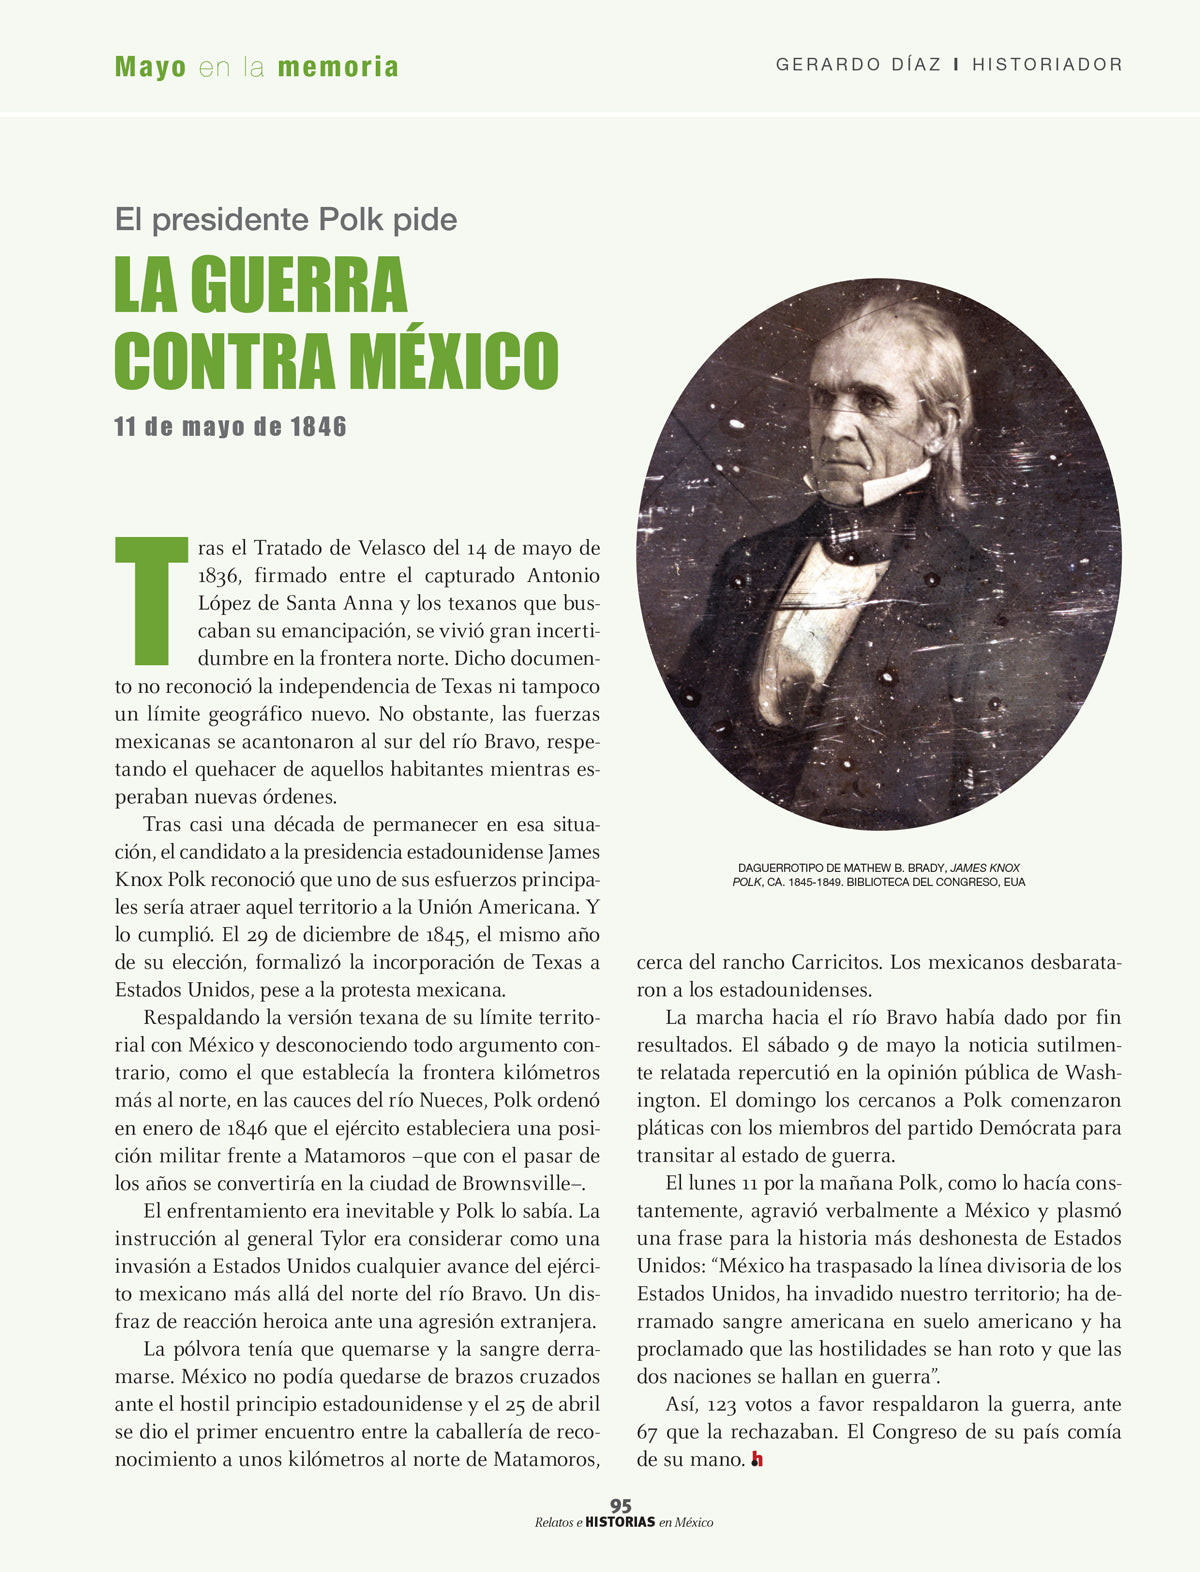 Historia de México: Una guía fascinante de la historia de México y la  Revolución Mexicana (Spanish Edition)